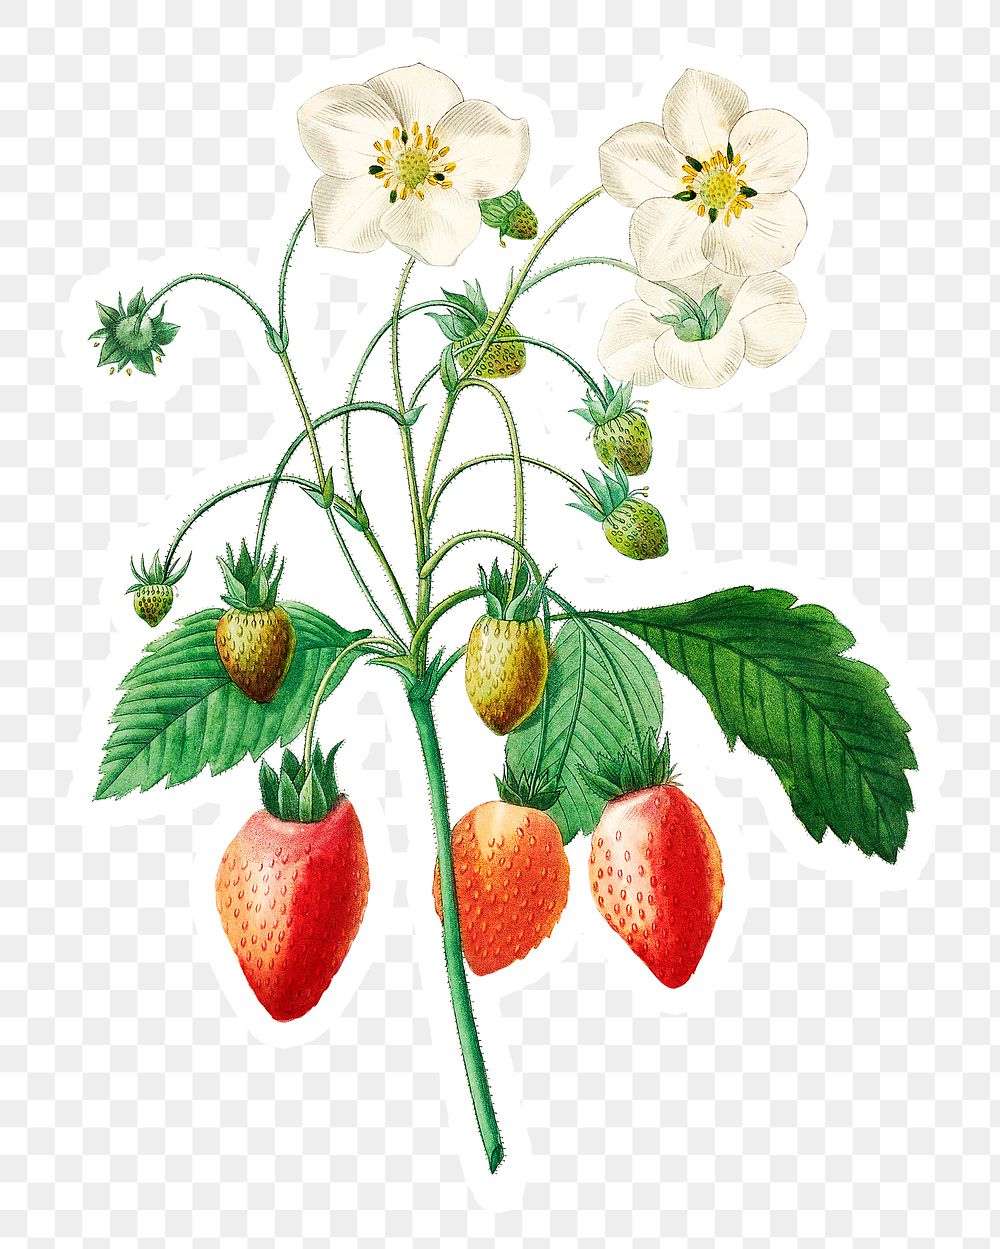 Strawberry plant sticker overlay design element 